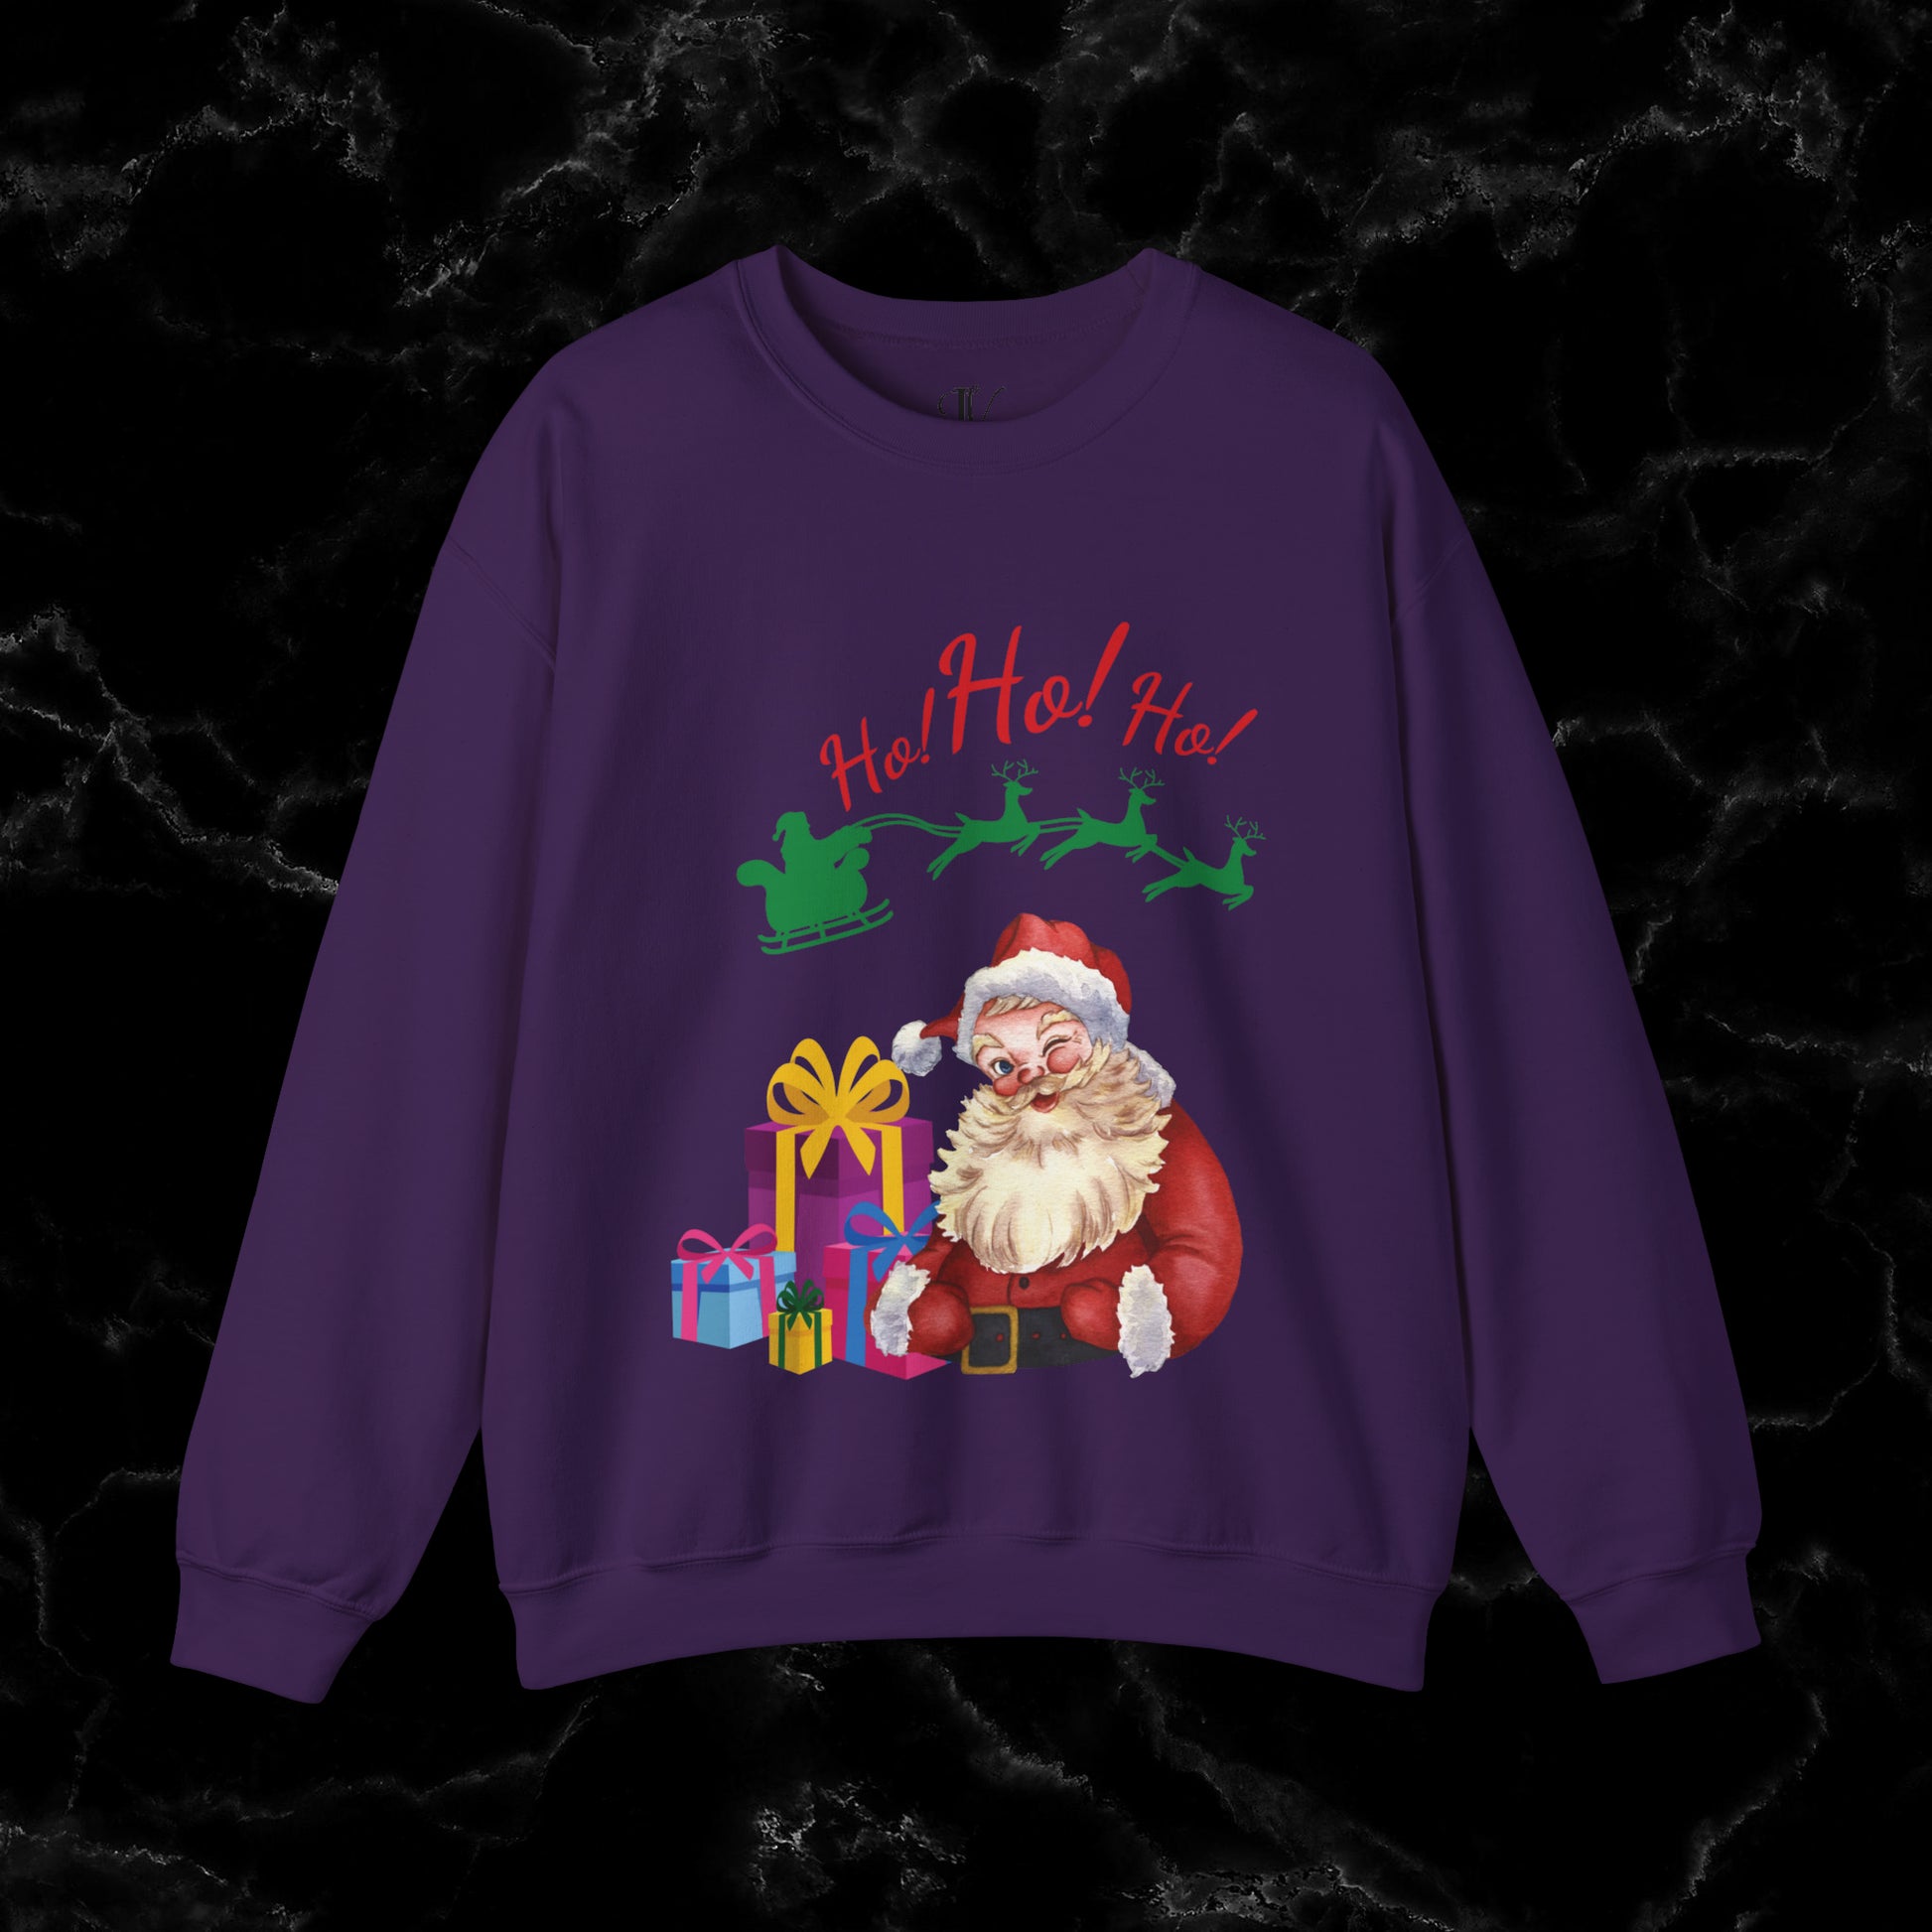 Retro Santa Sweatshirt - Vintage Christmas Fashion for Holiday Cheer Sweatshirt S Purple 